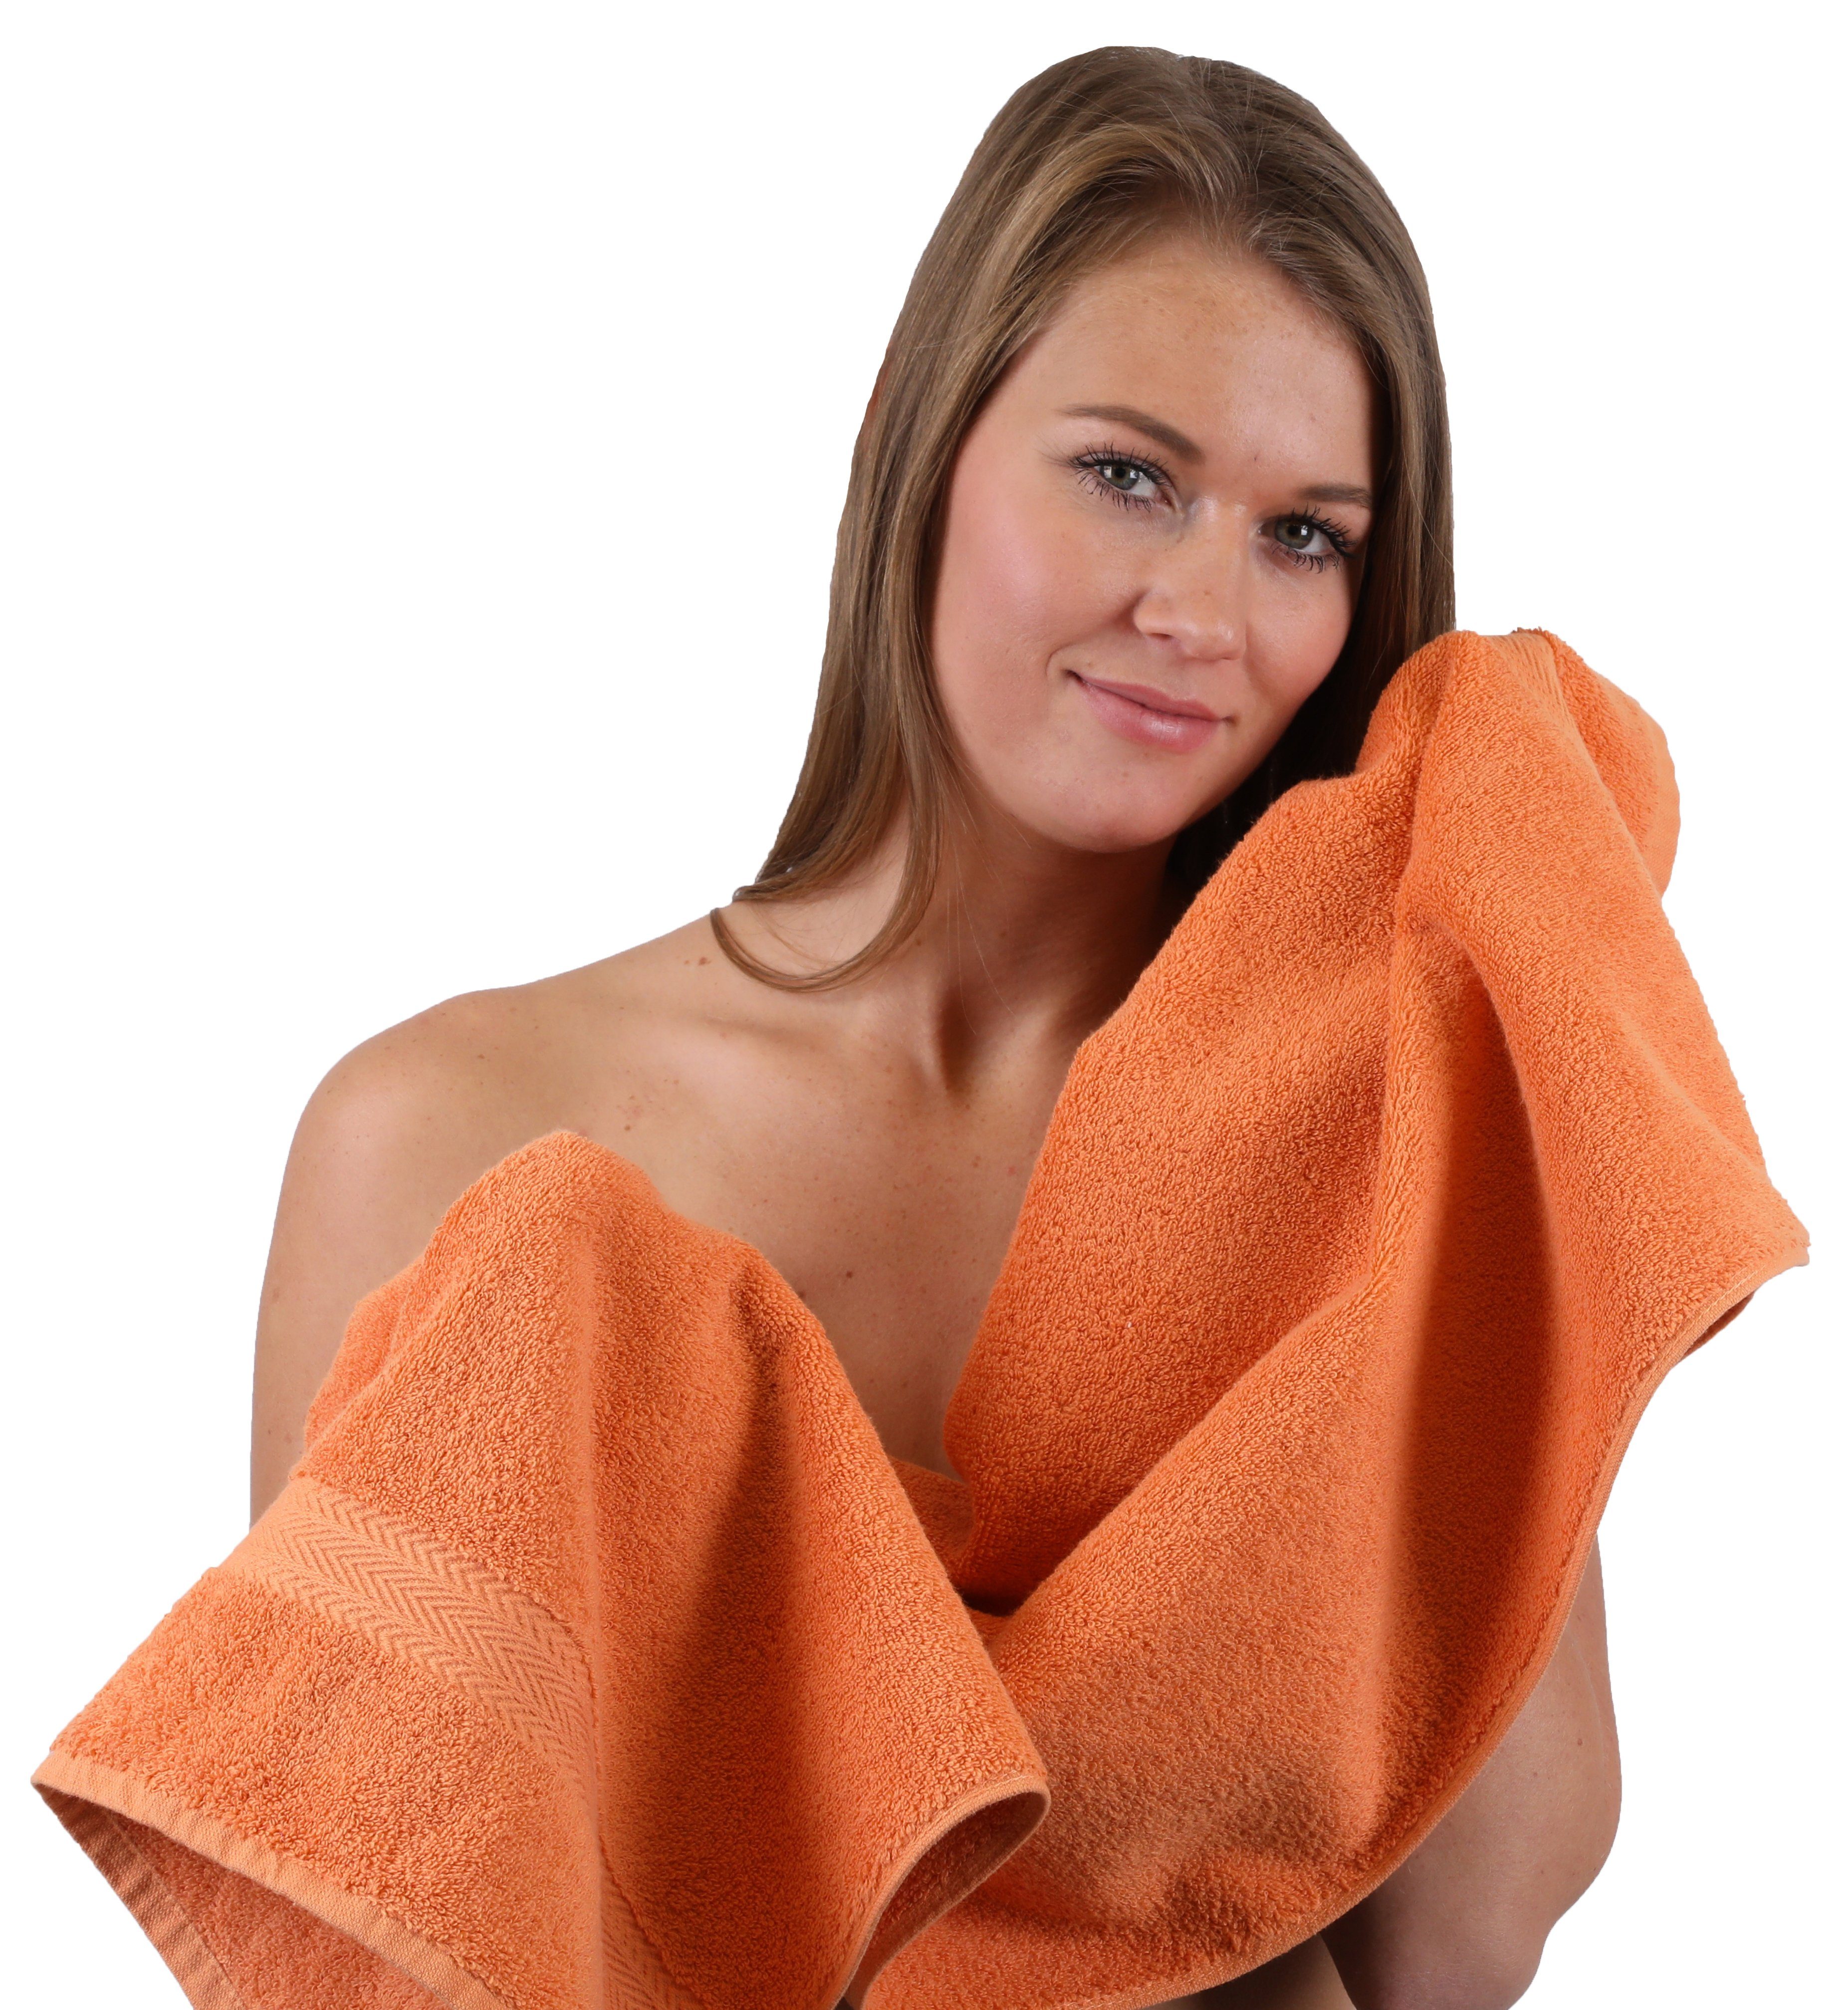 Betz Handtuch Dunkelblau 100% Set Baumwolle, 10-TLG. (Set, & Orange, Farbe Premium Handtuch-Set 10-tlg)